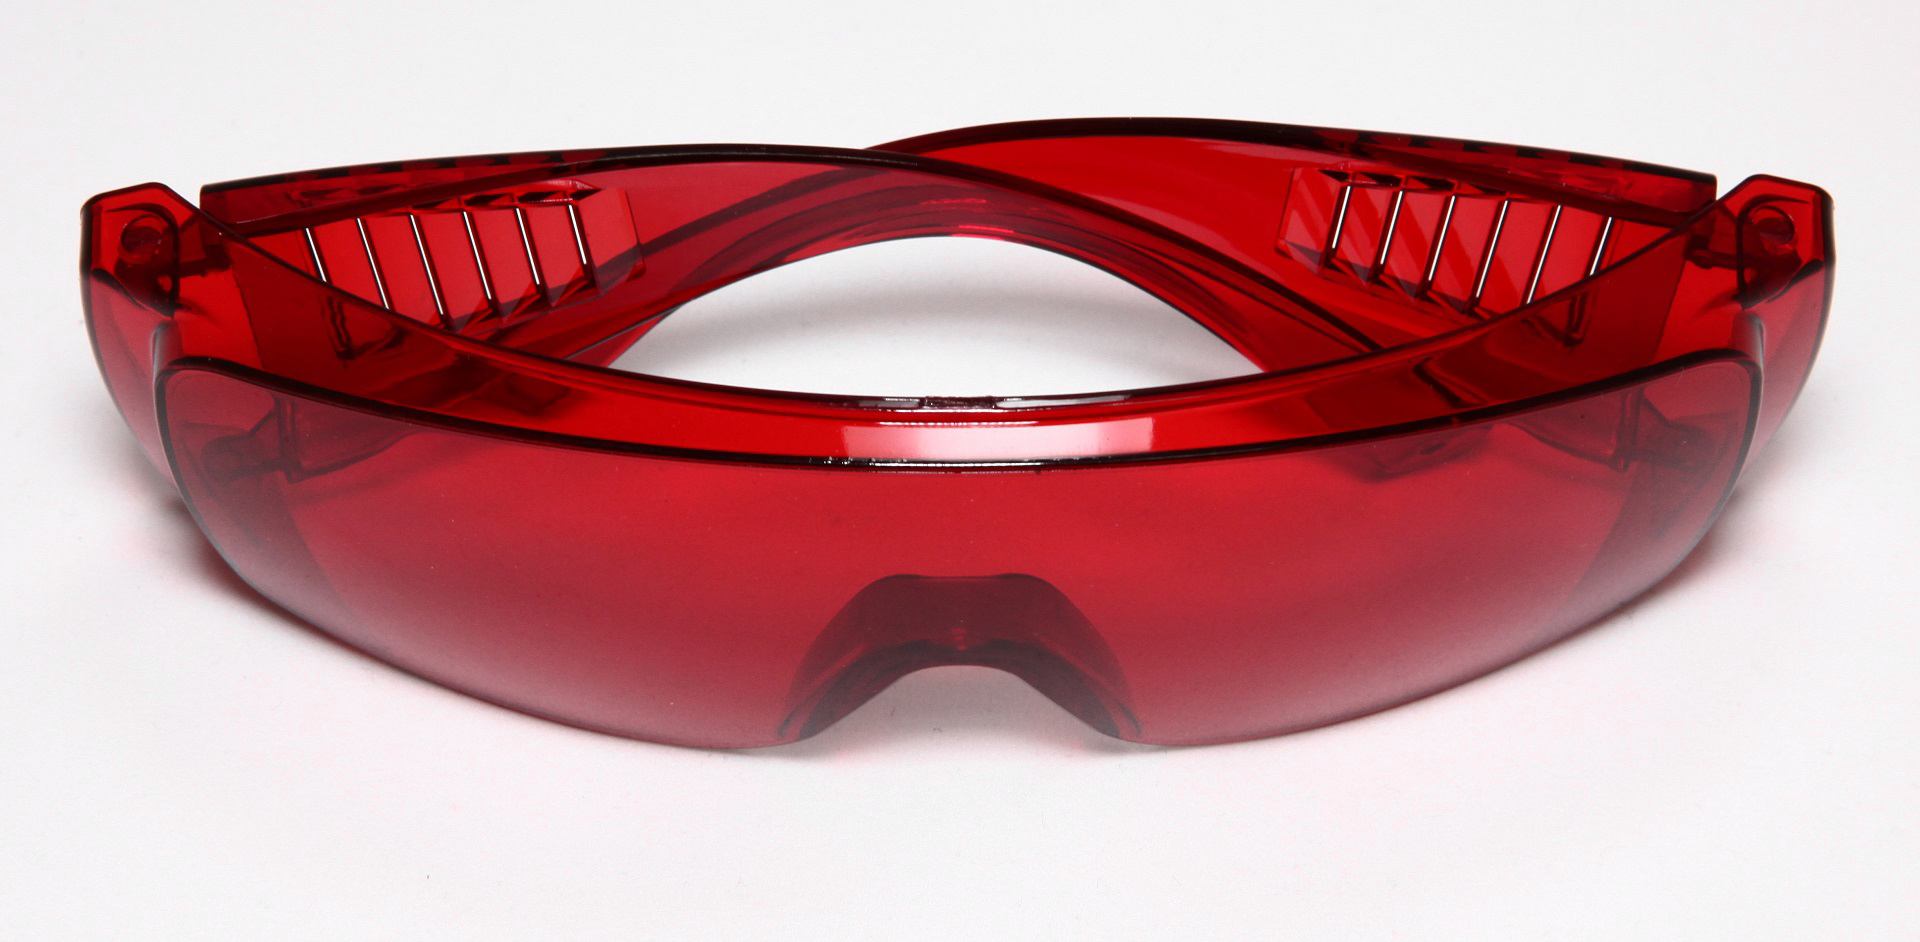 Очки защитные красные. Авиационный очки красные. Держатель для салфеток (цветной) 397мм, Huanghua promisee Dental, Китай.